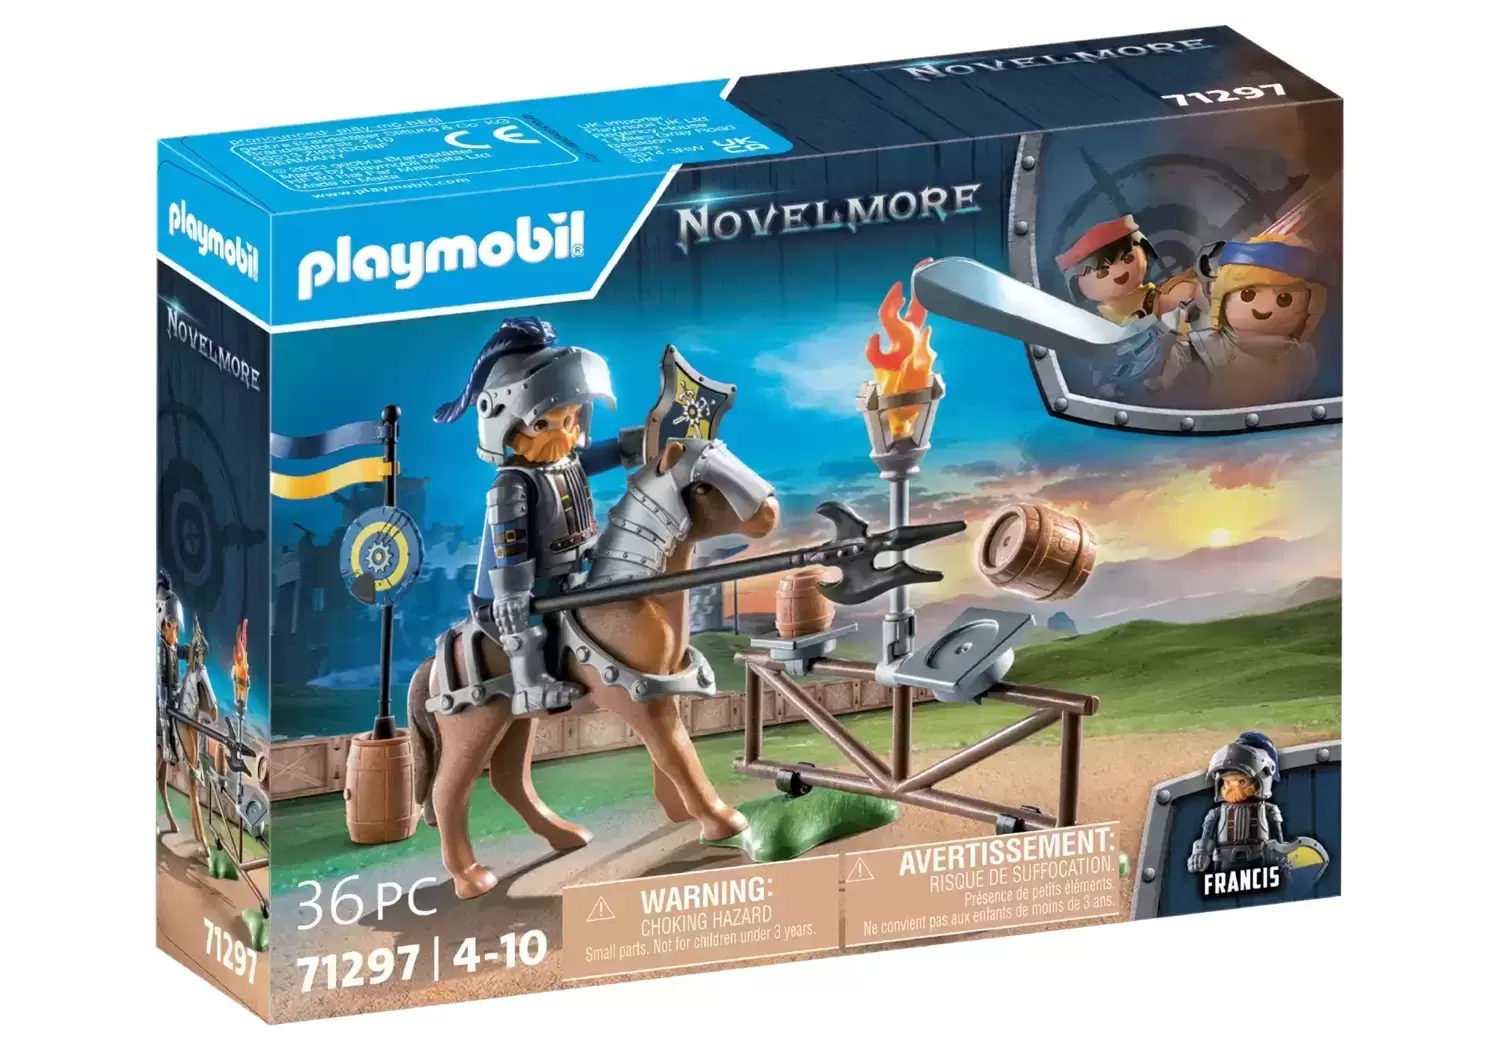 Playmobil géant de collection, Le Chevalier - Figurines